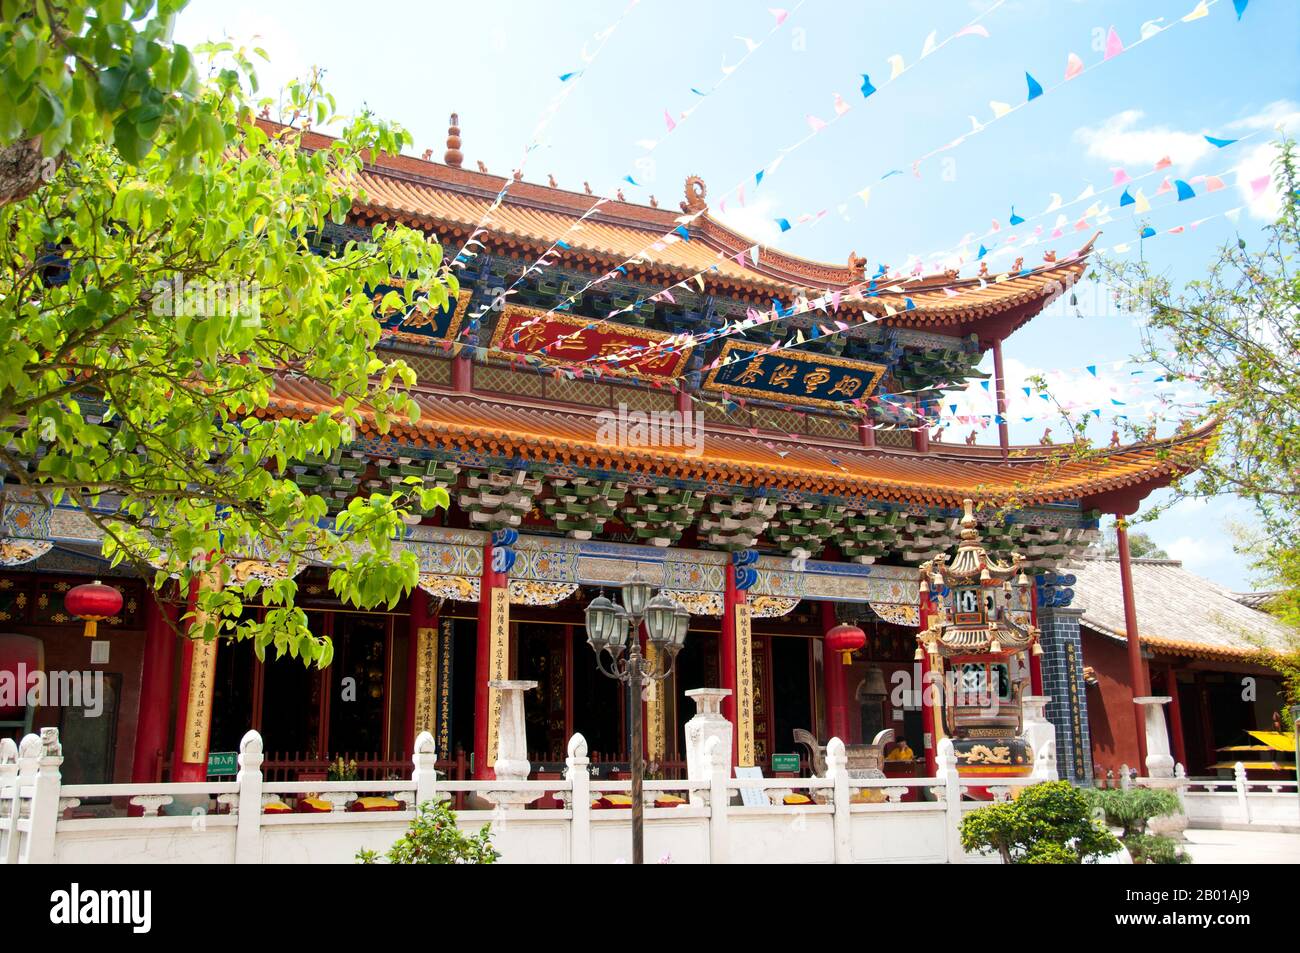 Chine : Qiongzhu si (Temple Bamboo), au nord-ouest de Kunming, province du Yunnan. Qiongzhu si (Temple Bamboo) a été construit à l'origine pendant la dynastie Tang (618-907), mais a été correctement établi pendant la dynastie Yuan (1271-1368) comme le premier temple dédié au bouddhisme zen dans le Yunnan. Le temple est célèbre pour ses 500 arhats peints créés sous le règne de l'empereur Qing Guangxu (1875-1909) par le sculpteur Li Guangxiu. Banque D'Images